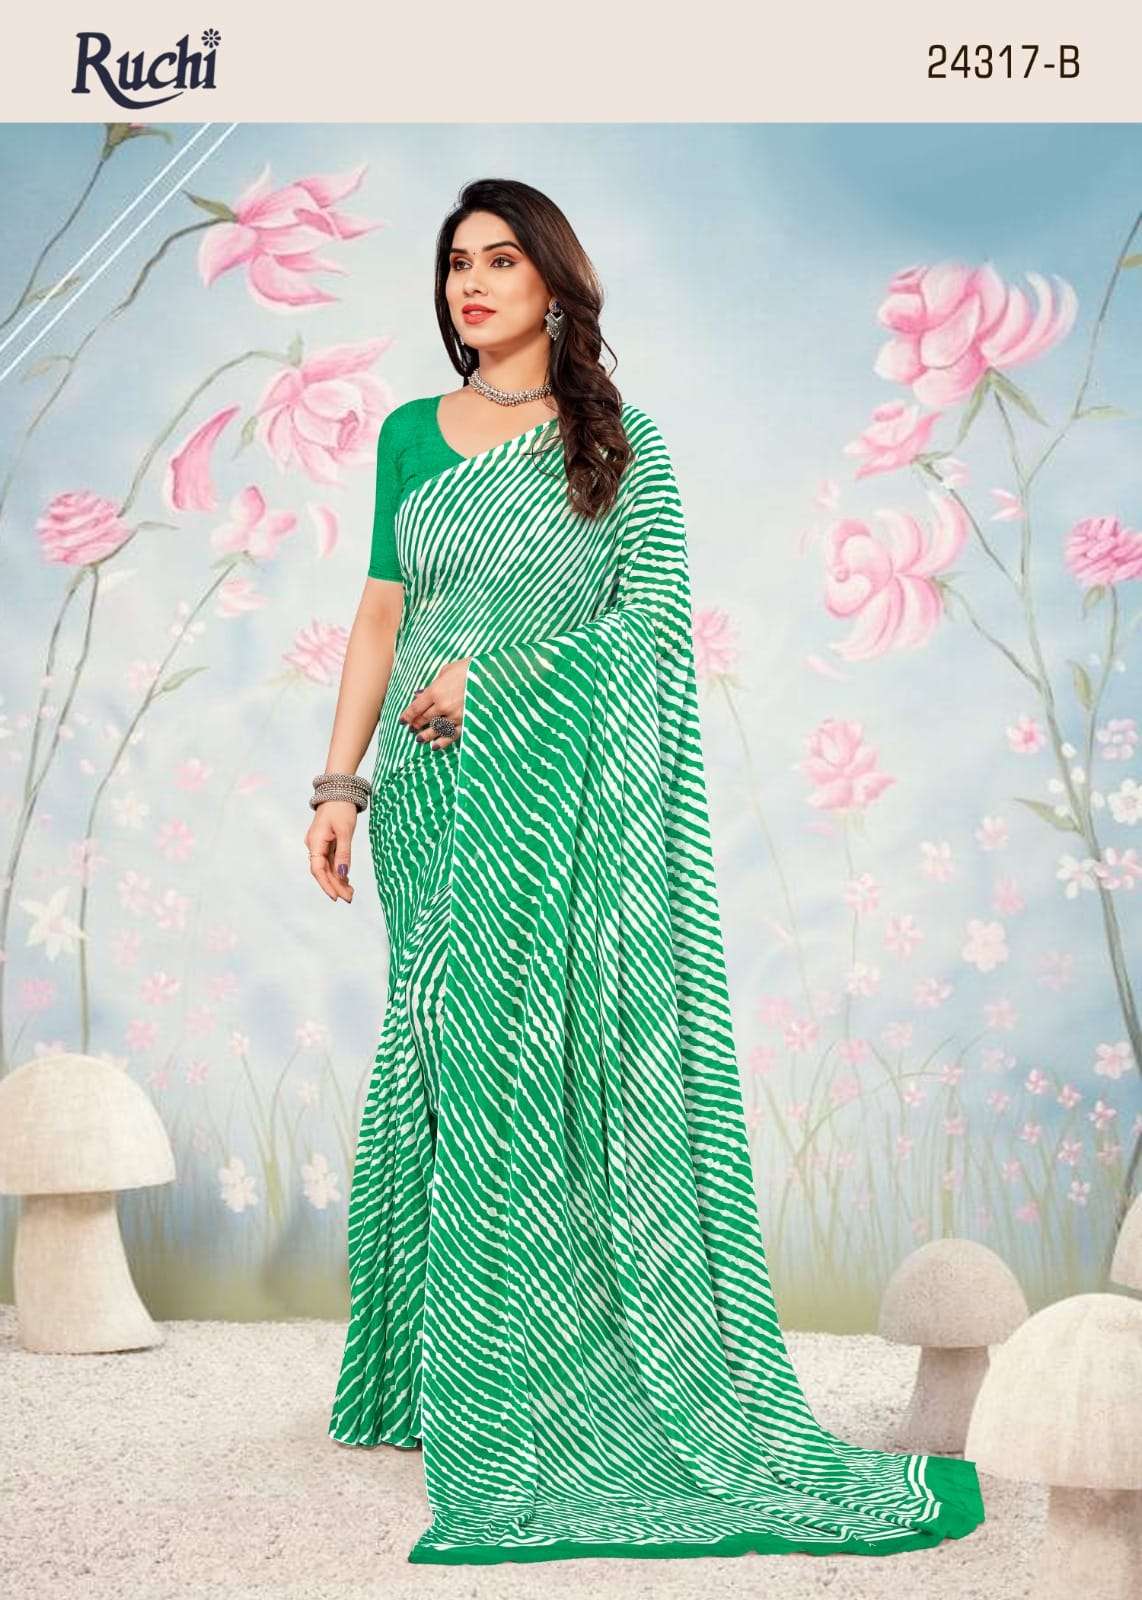 ruchi star chiffon lehriya 24317 fancy daily wear sarees collection 